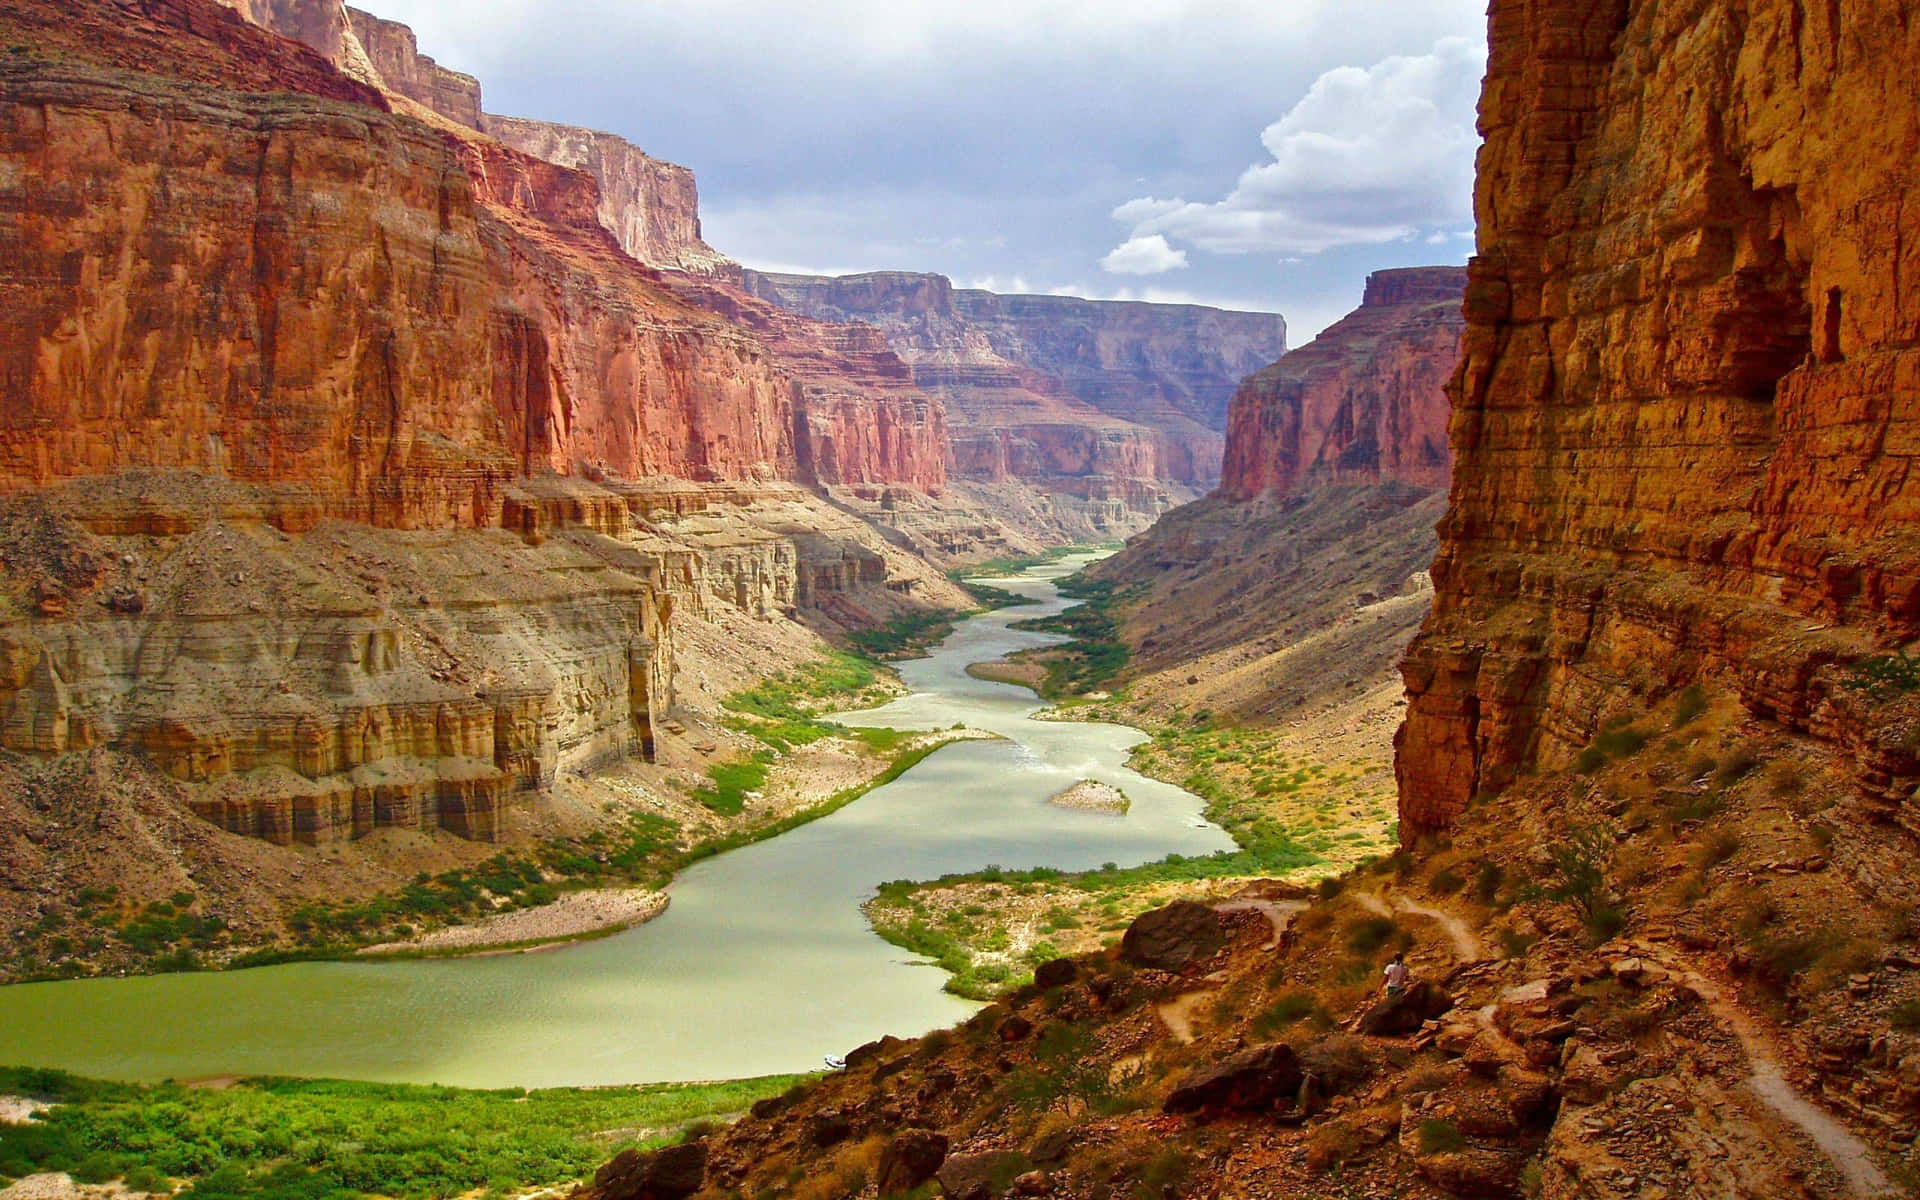 Admire The Magnificent Landscape of Arizona